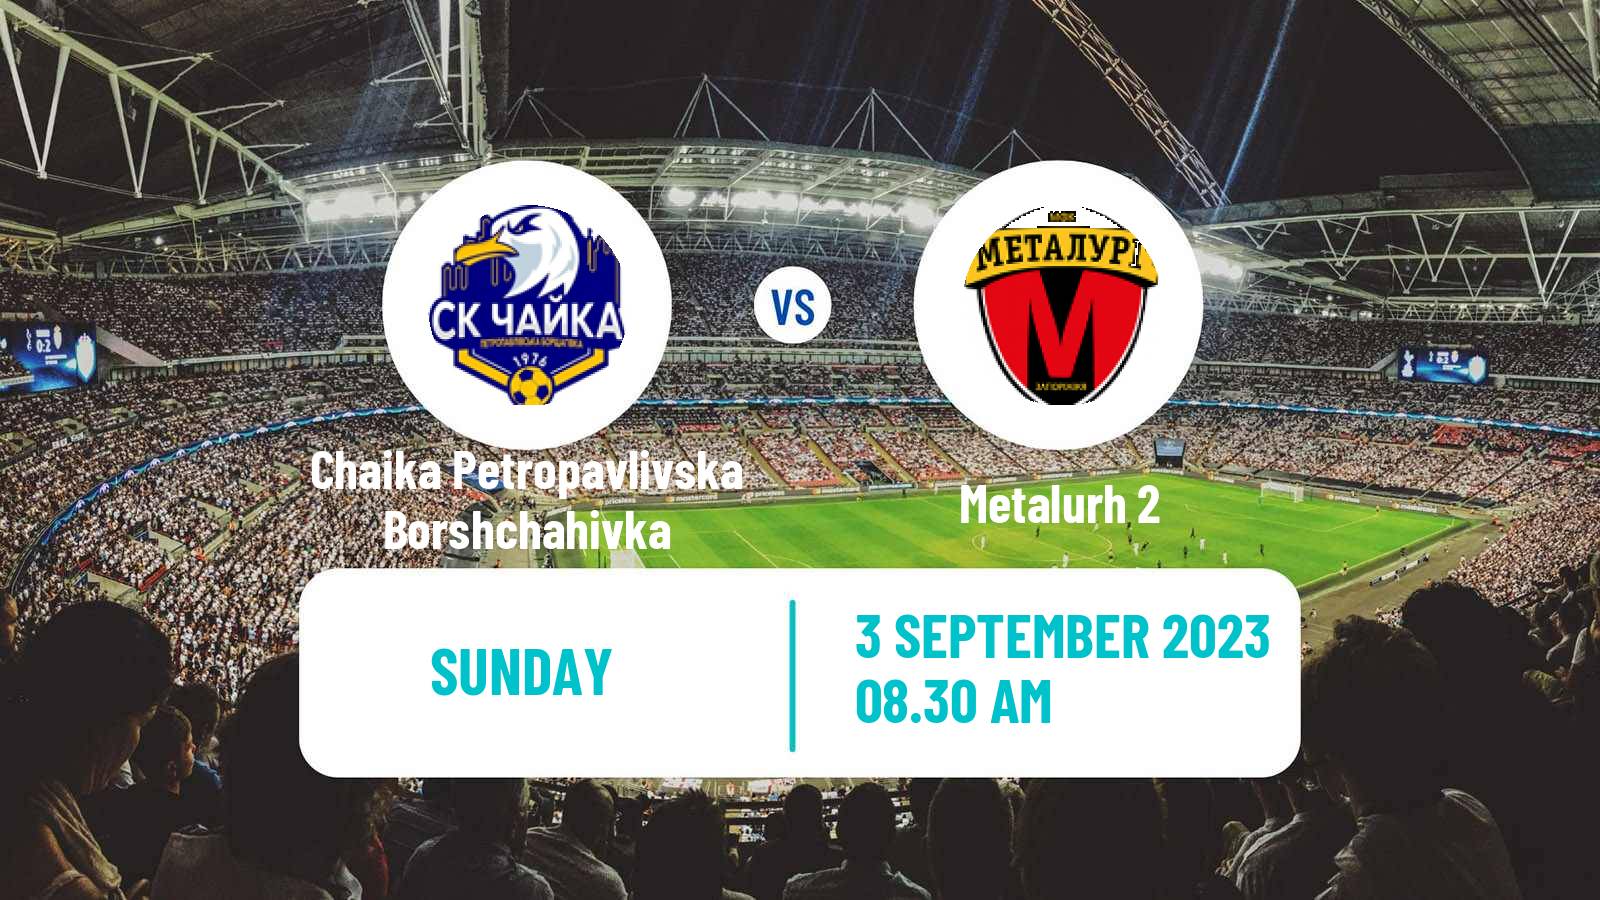 Soccer Ukrainian Druha Liga Chaika Petropavlivska Borshchahivka - Metalurh 2